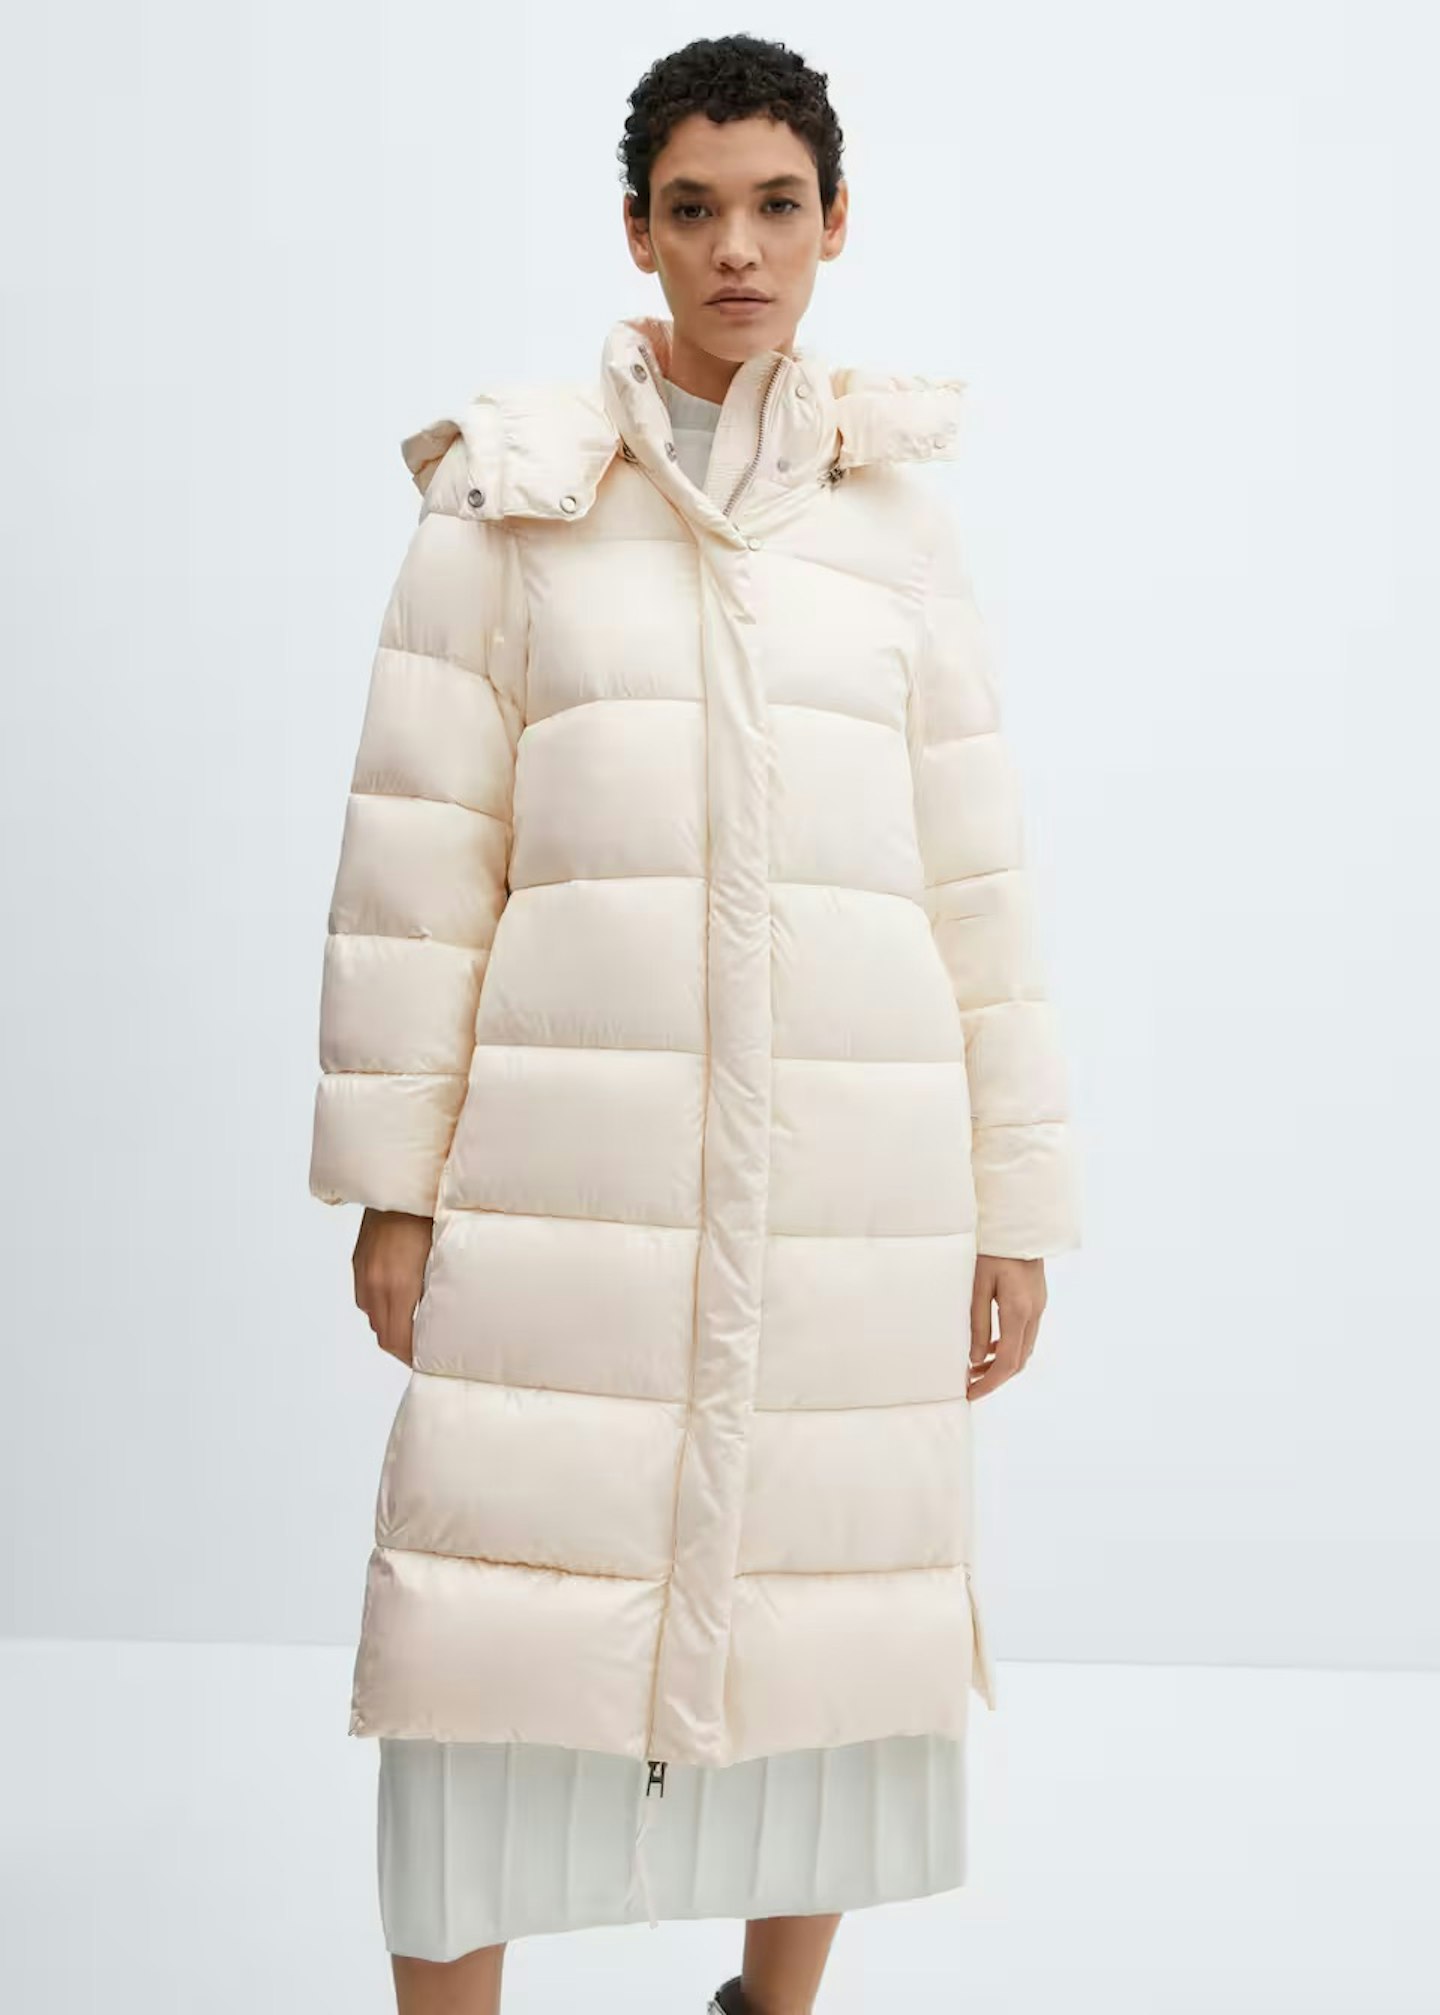 Model wearing cream longline puffer coat